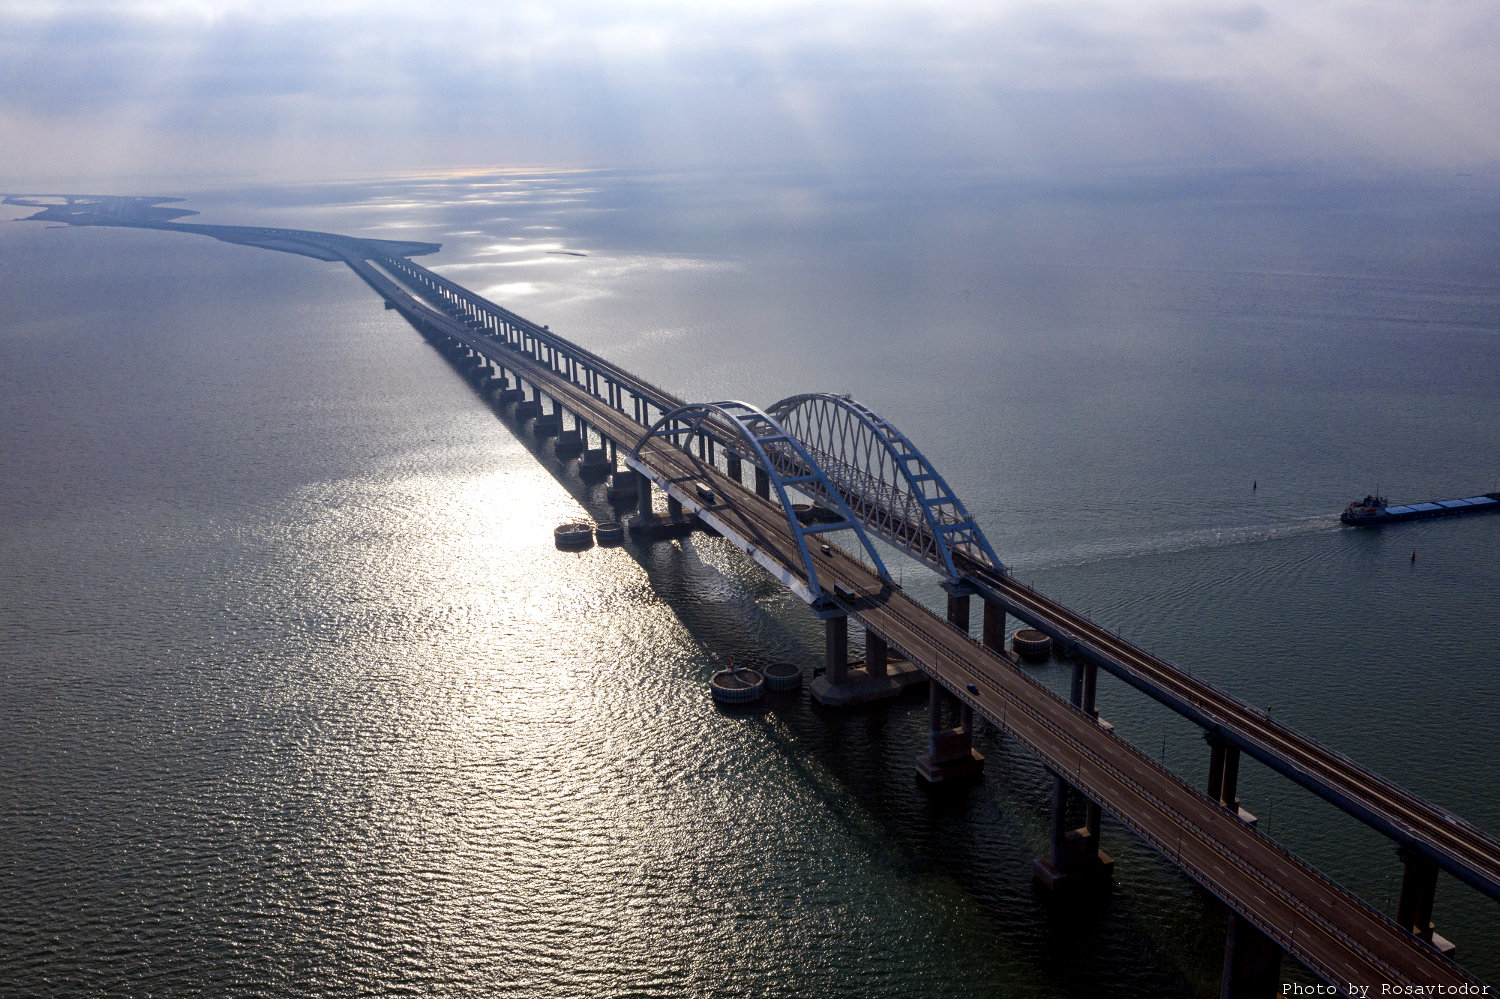 Russia to face legal scrutiny for Kerch Bridge construction - Ukraine's MFA 5